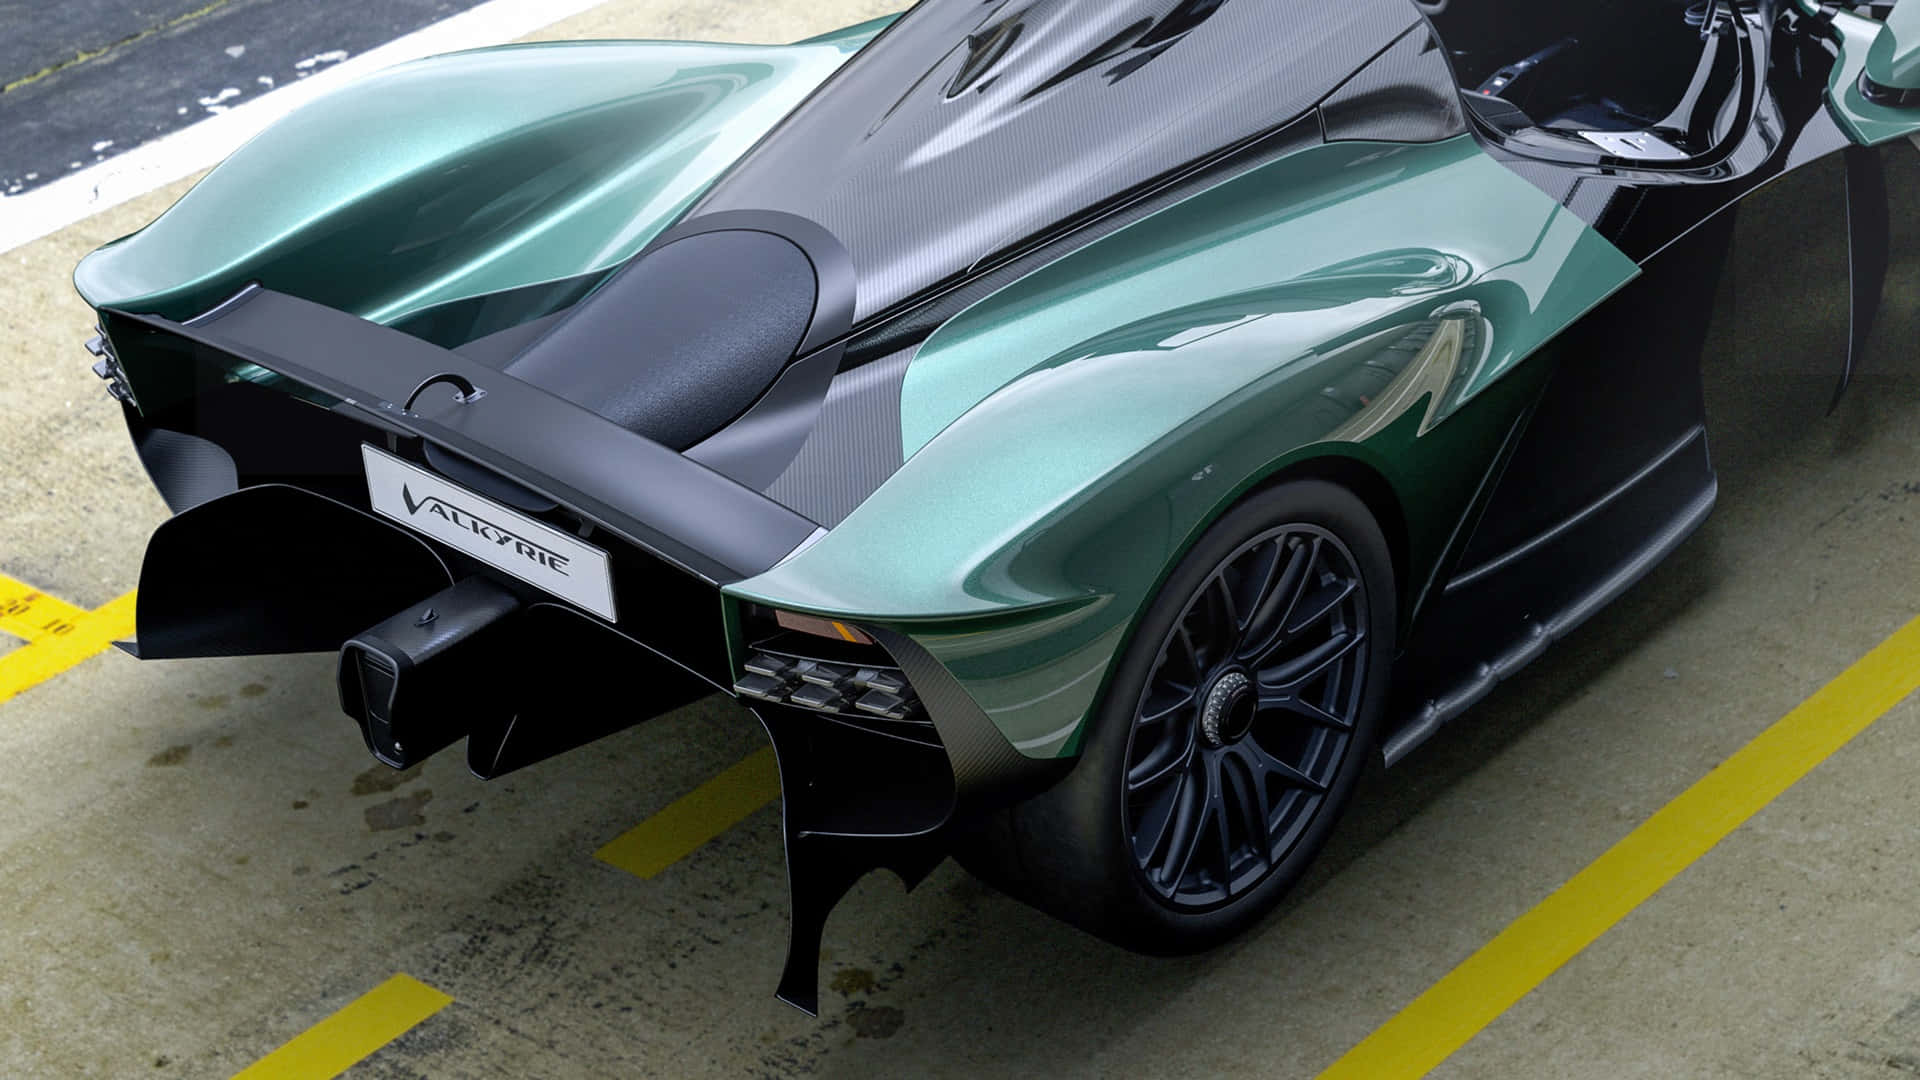 Upplevlyxig Hastighet Med Aston Martin